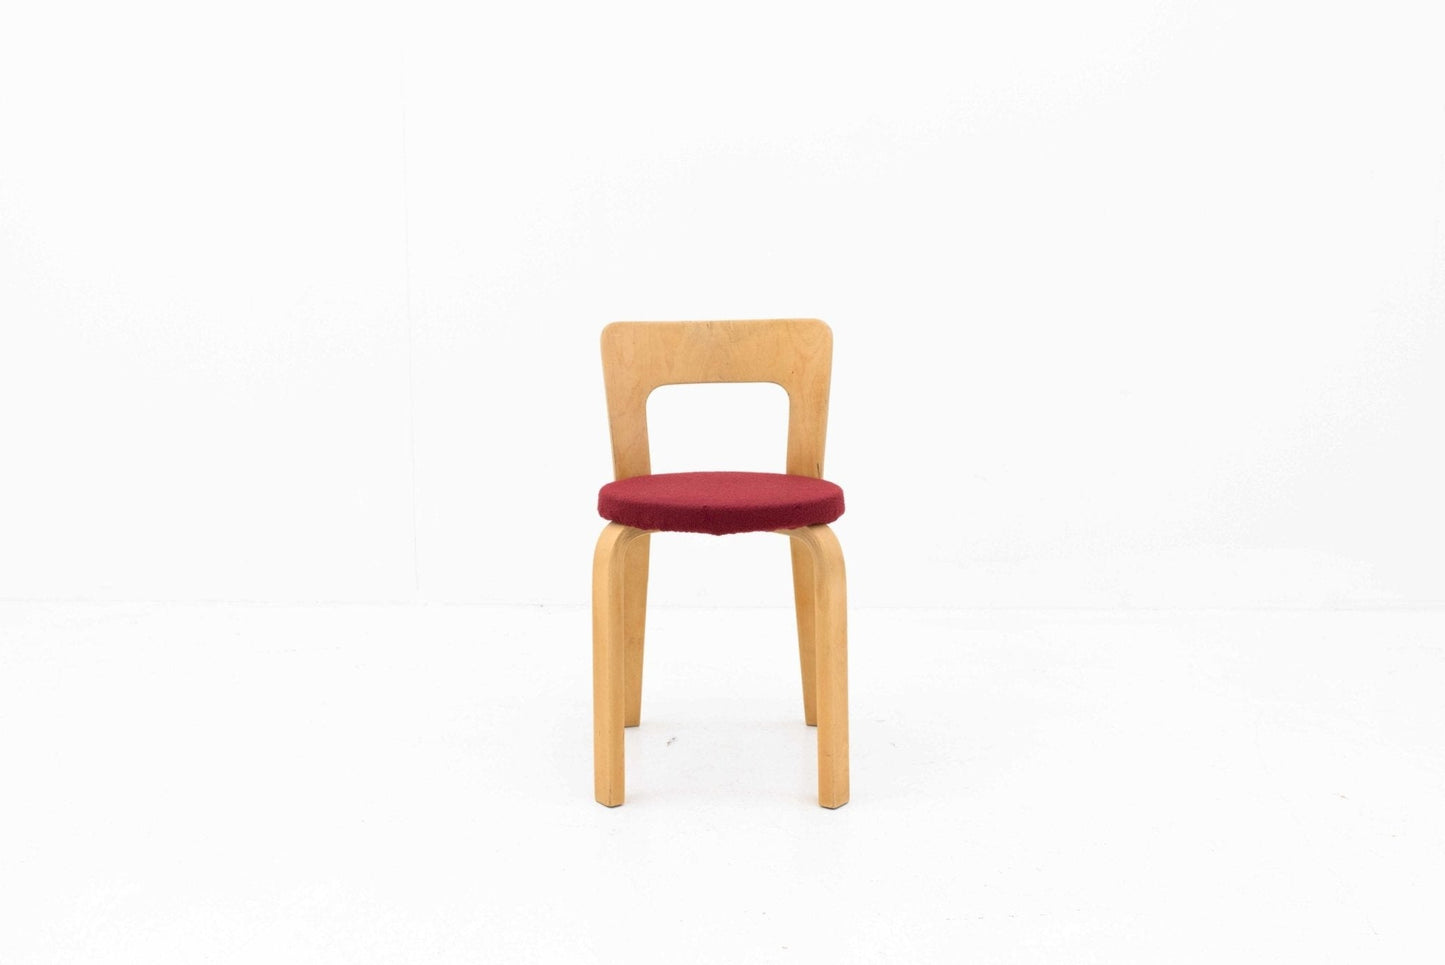 Alvar Aalto Chair 65 von Artek - 2nd home